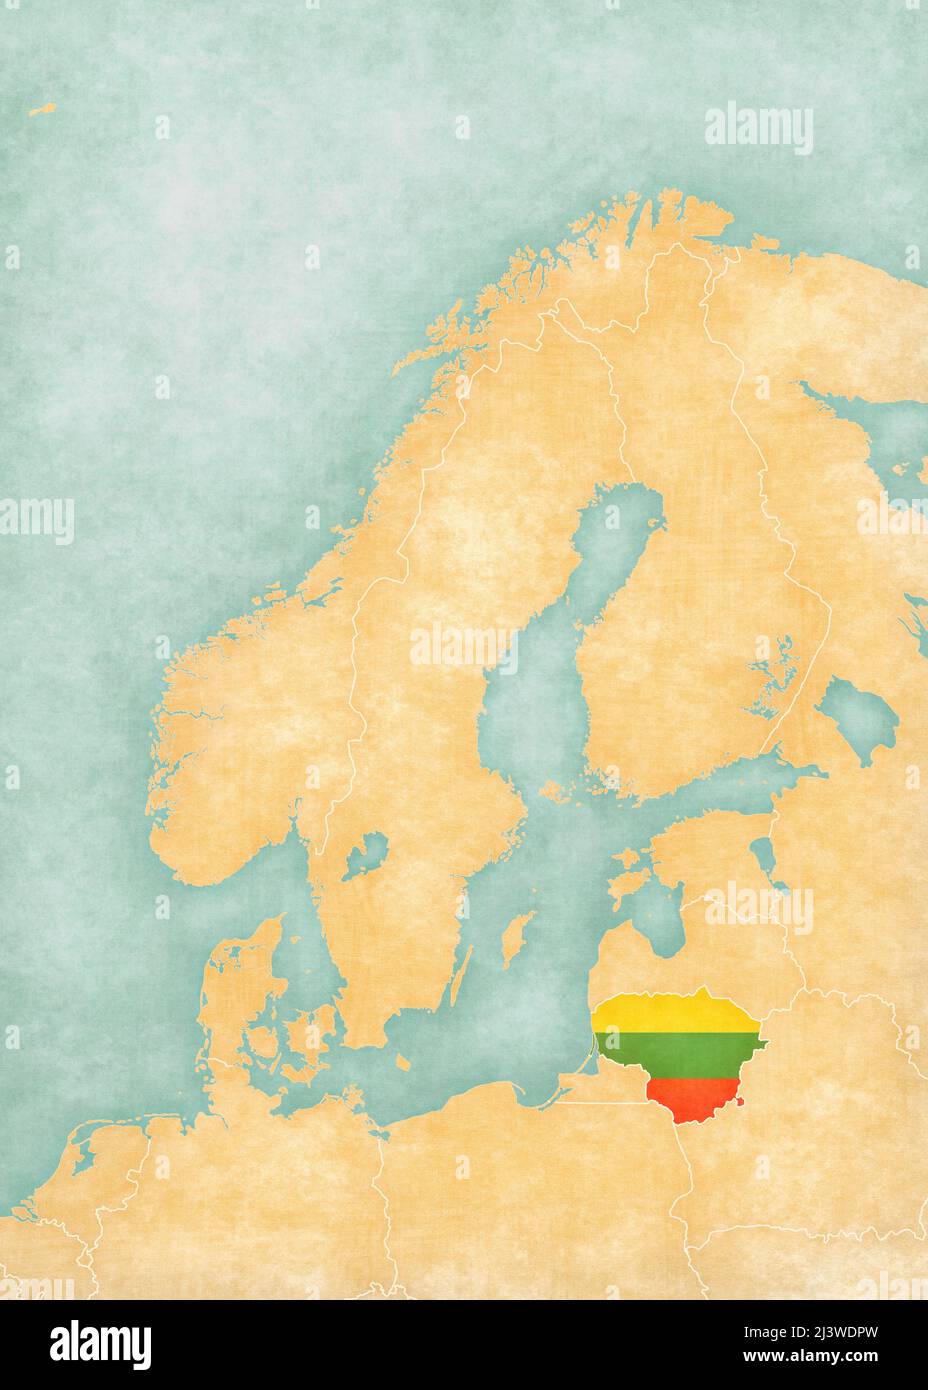 Lituania (bandiera lituana) sulla mappa della Scandinavia. La mappa è in morbido grunge e vintage stile, come la pittura acquerello su carta vecchia. Foto Stock